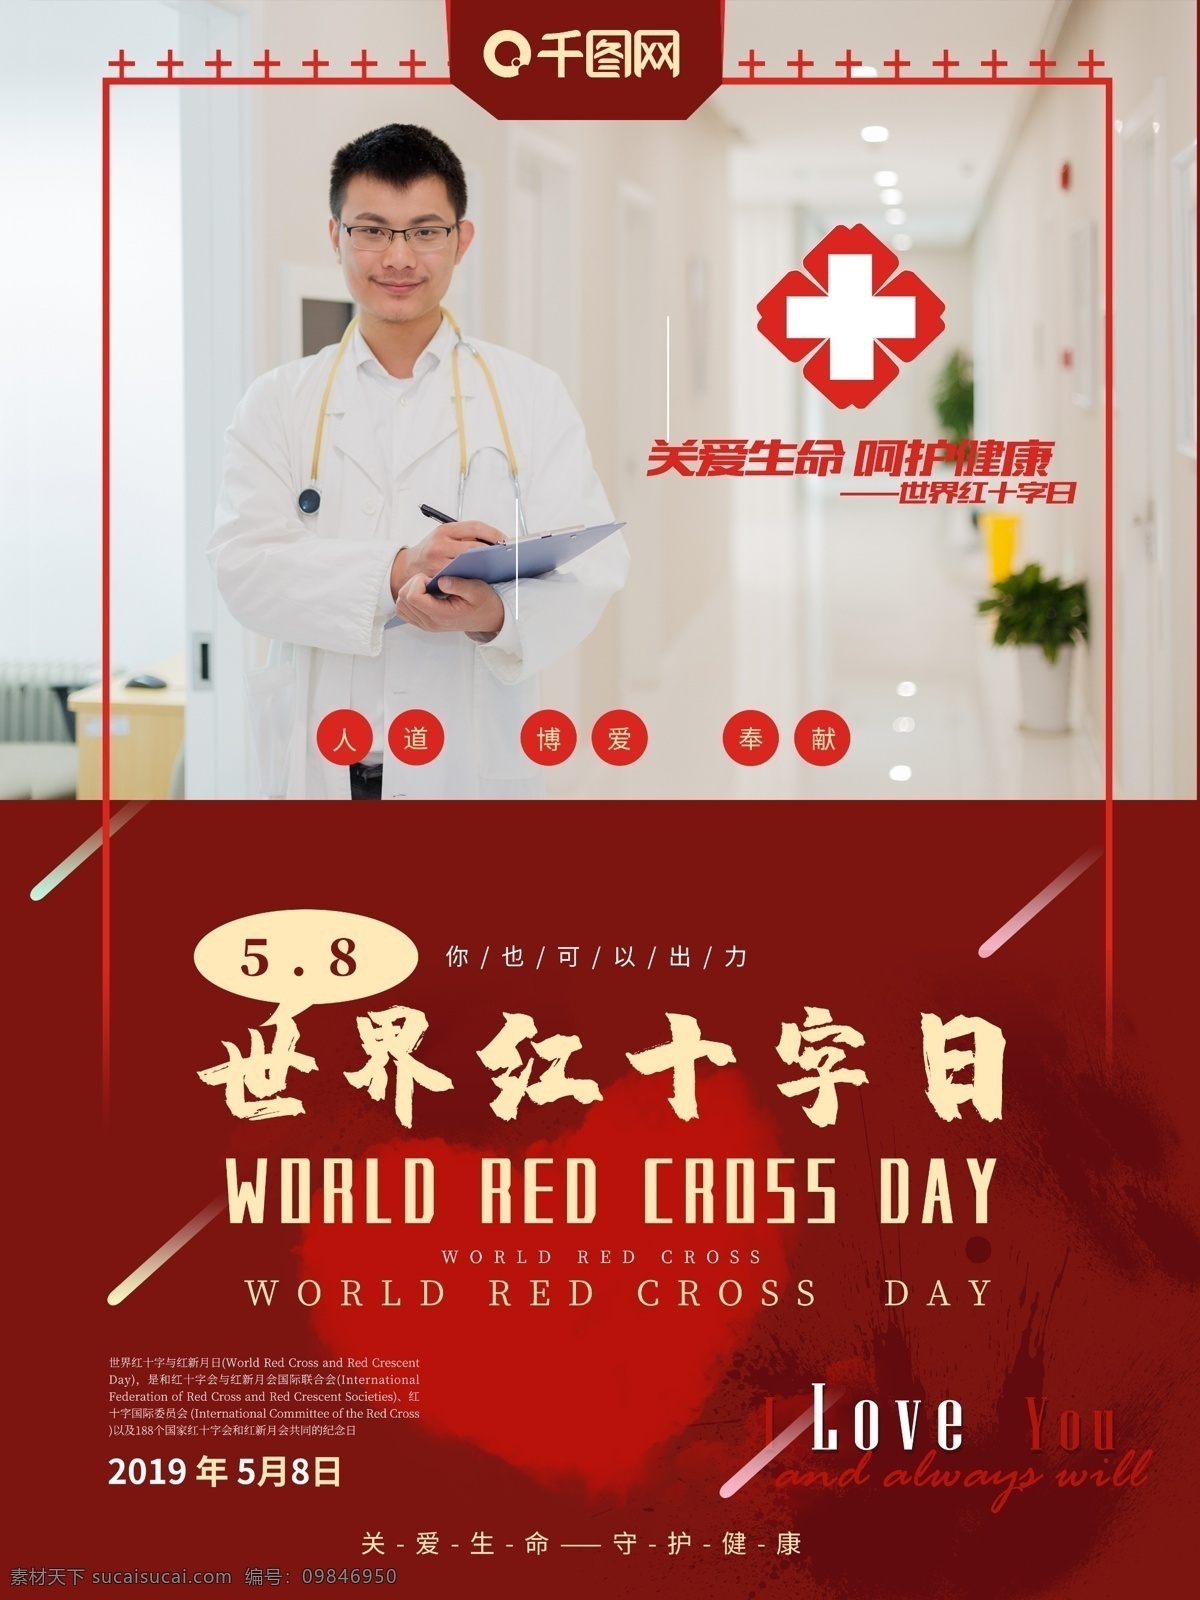 红色 背景 世界 红十字日 海报 红色背景 节日海报 红十字会 复古 简约 公益海报